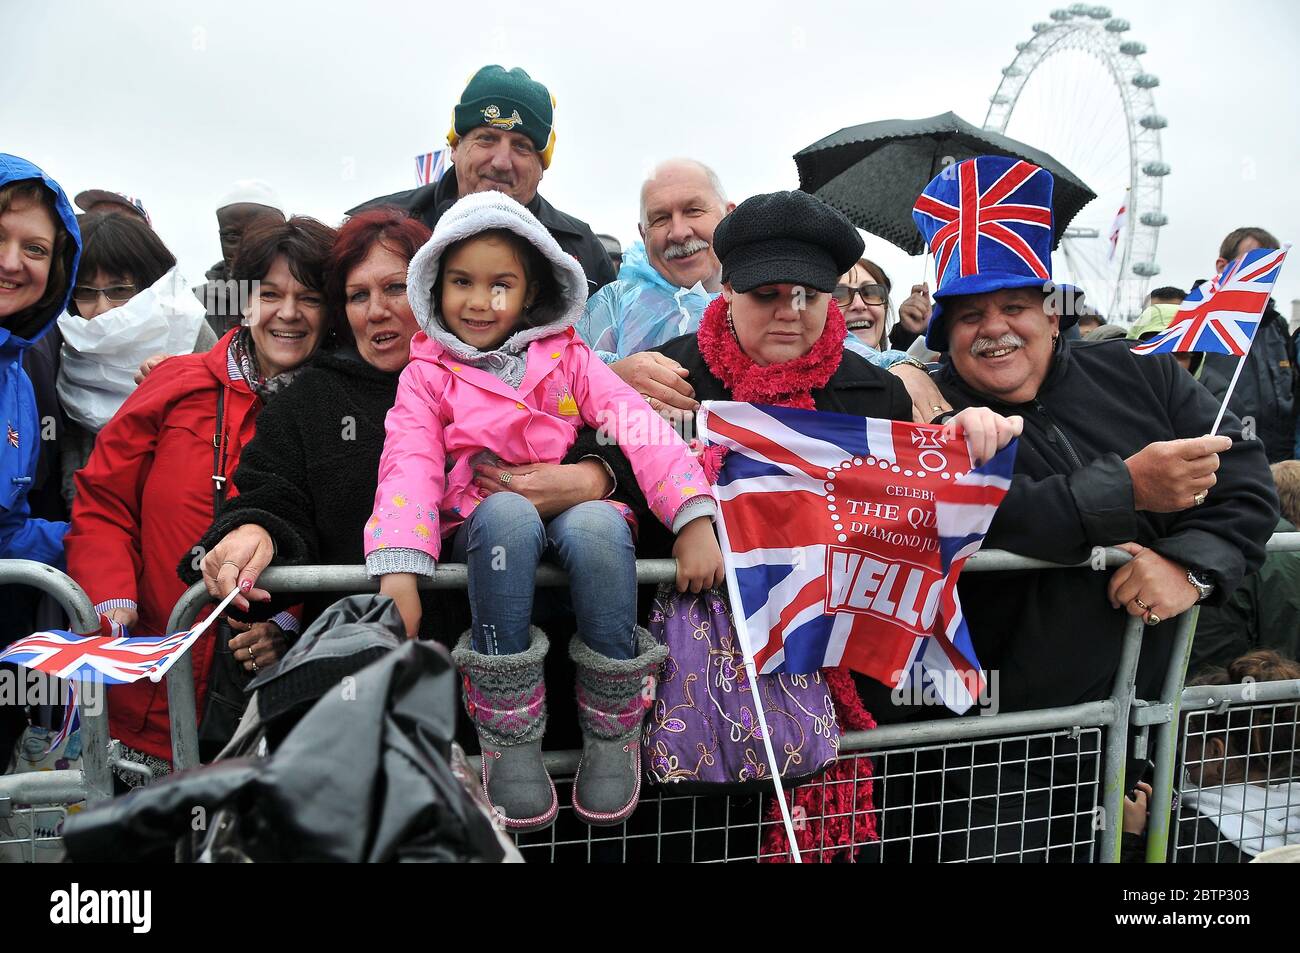 Die Thames Diamond Jubilee Pageant war eine Parade am 3. Juni von 670 Booten auf dem tideway der Themse in London als Teil der Feierlichkeiten des Diamond Jubilee von Elizabeth 11. Die Königin, prinz Philip und andere Mitglieder der königlichen Familie waren an Bord von Schiffen, die an der Parade teilnahmen. Stockfoto